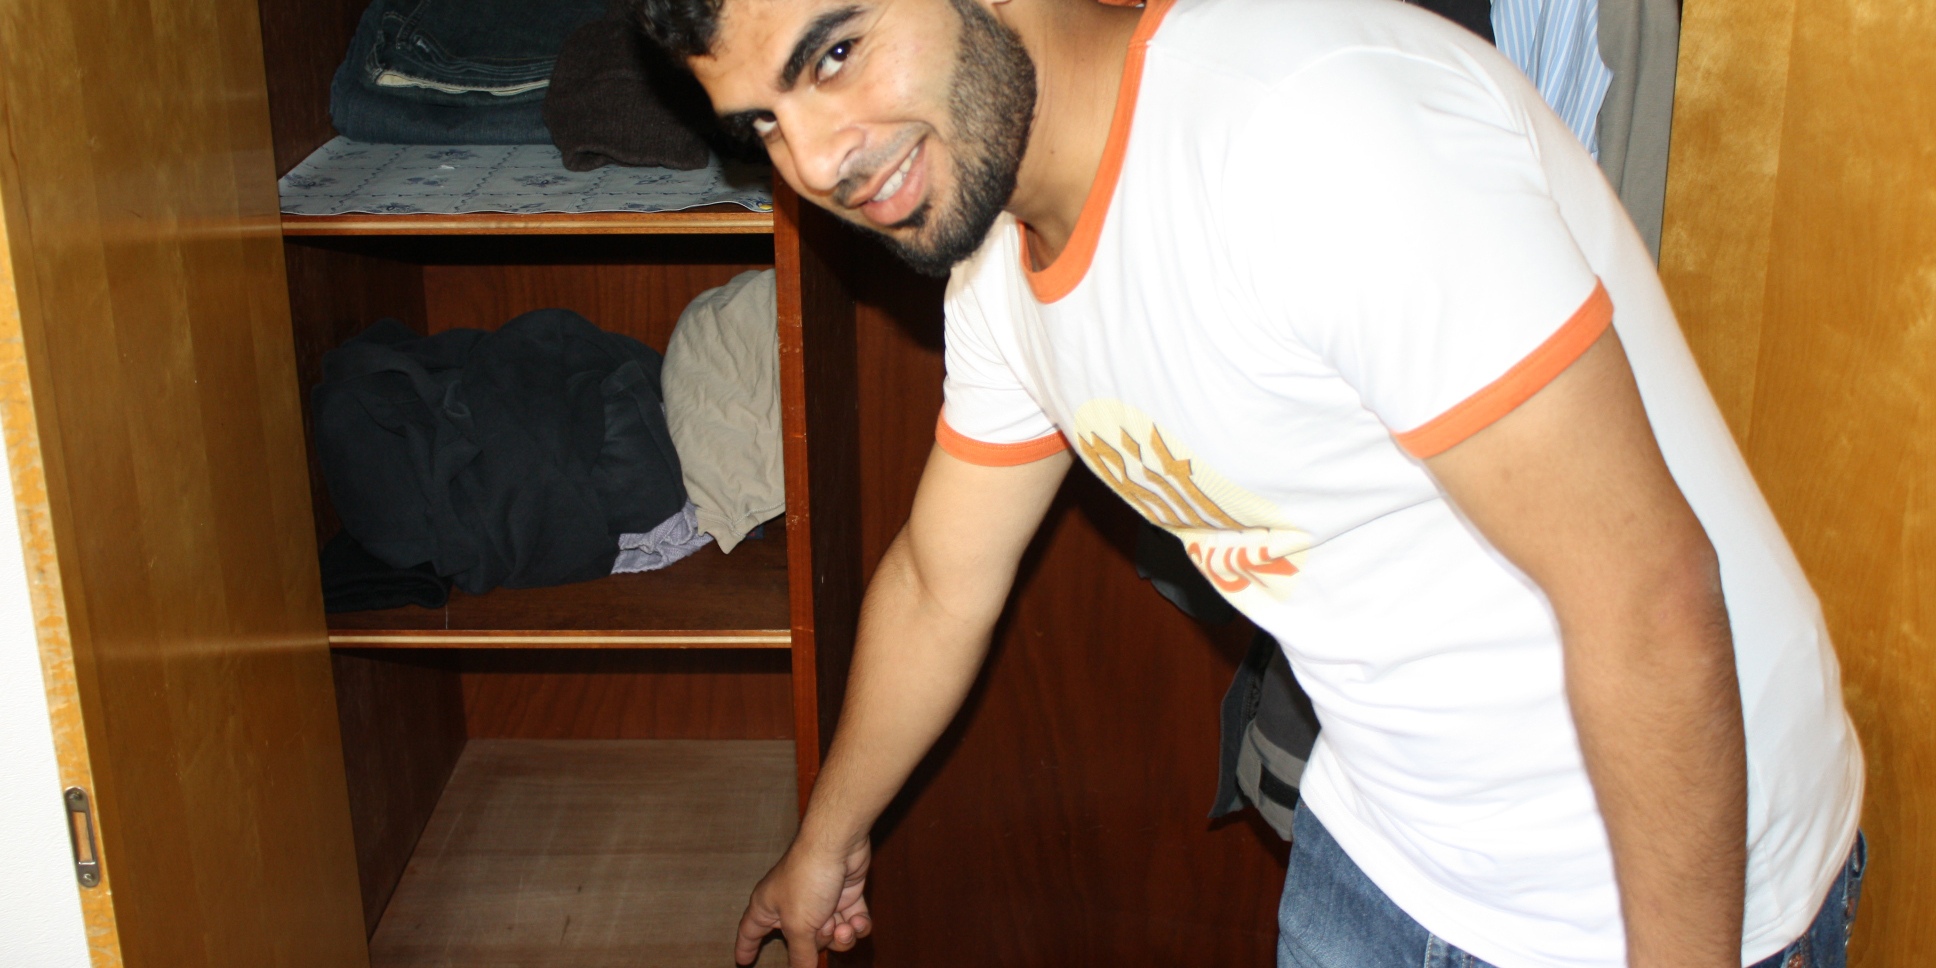 El joven sirio halló el dinero en una especie de doble fondo de su armario.